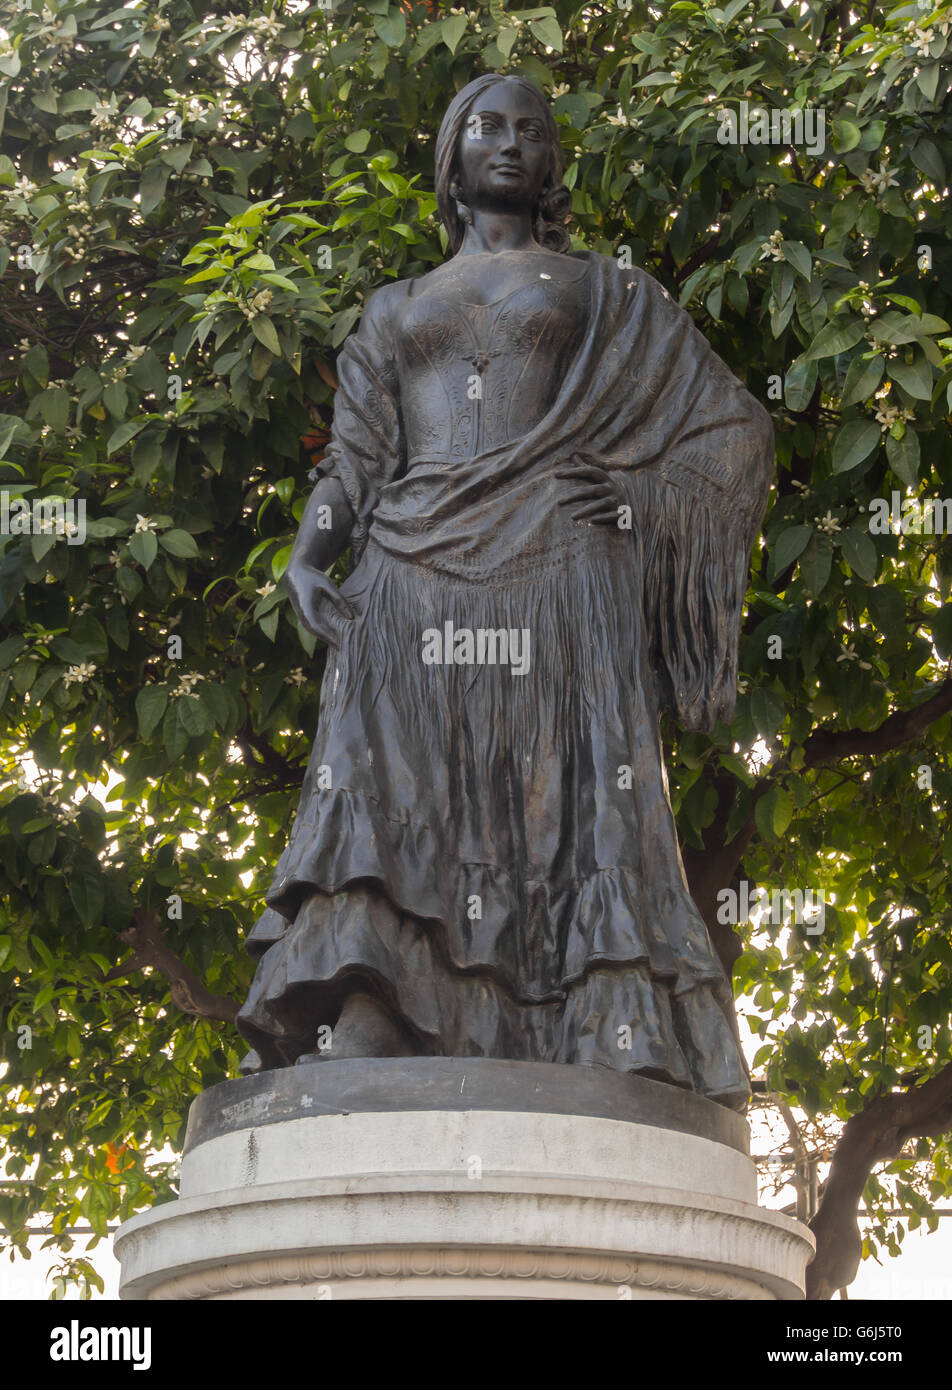 SEVILLA, SPANIEN - 14. MÄRZ 2016: Statue von Carmen aus der Oper, die in Sevilla stattfand Stockfoto